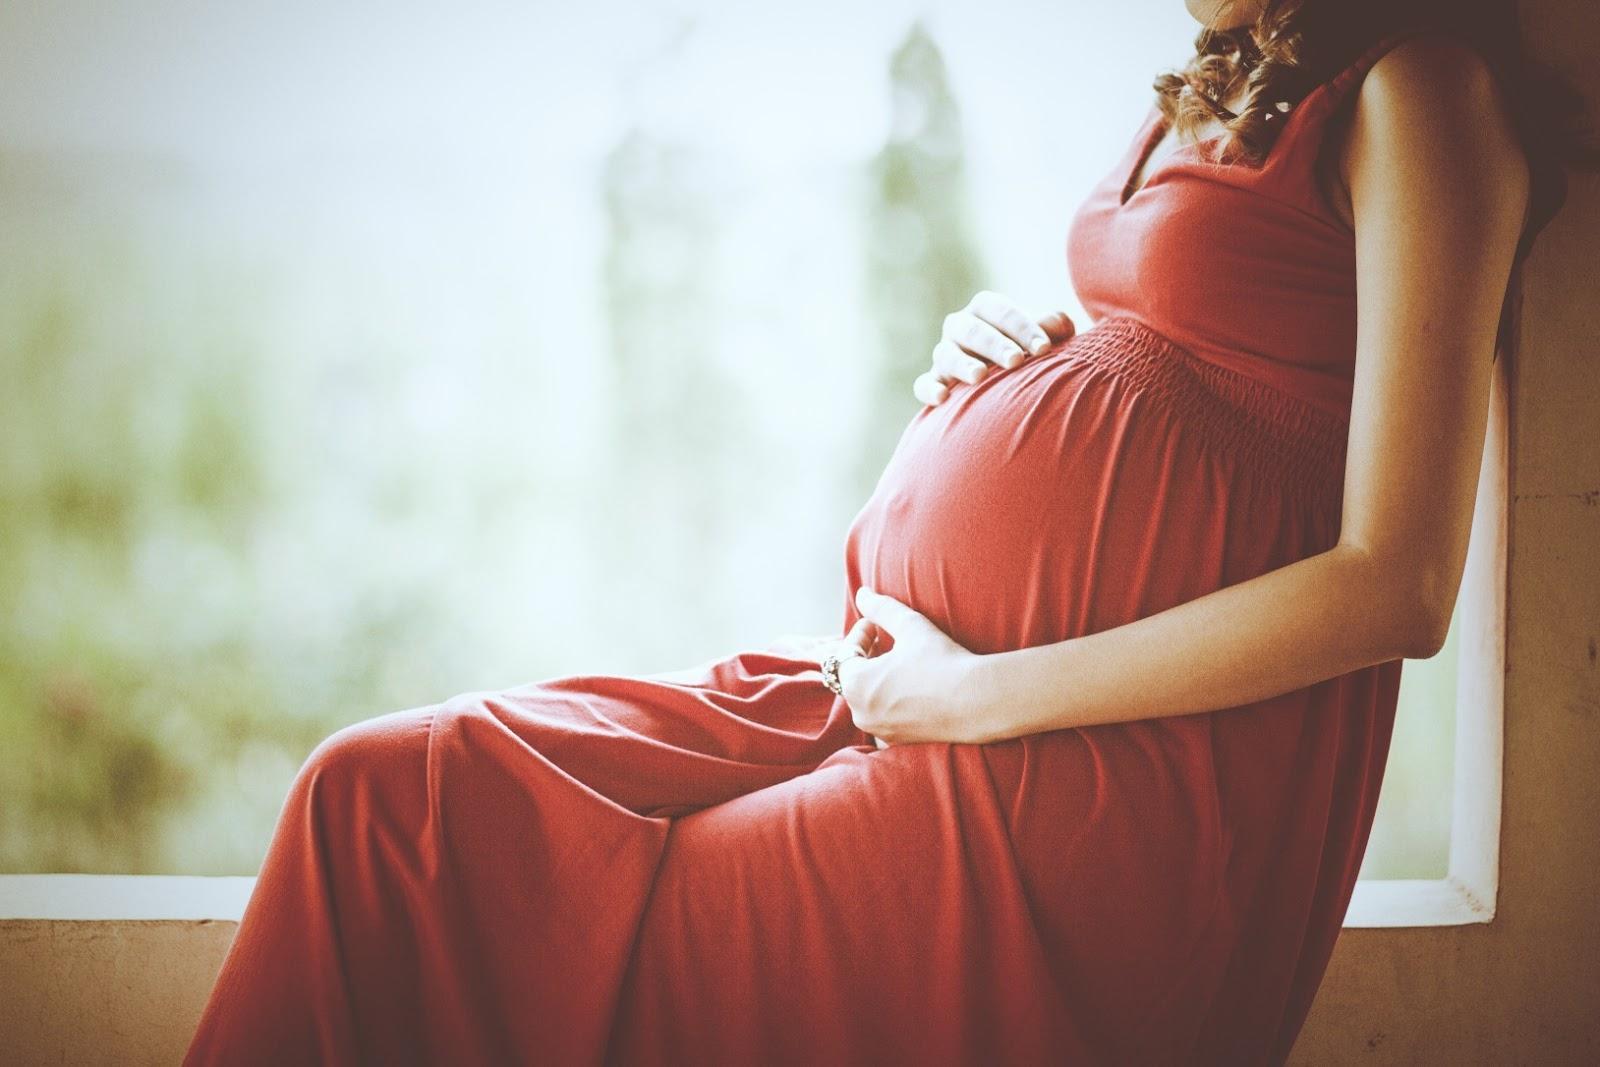 गर्भवती महिला के लिए होता है बहुत ही लाभकारी आड़ू का सेवन 